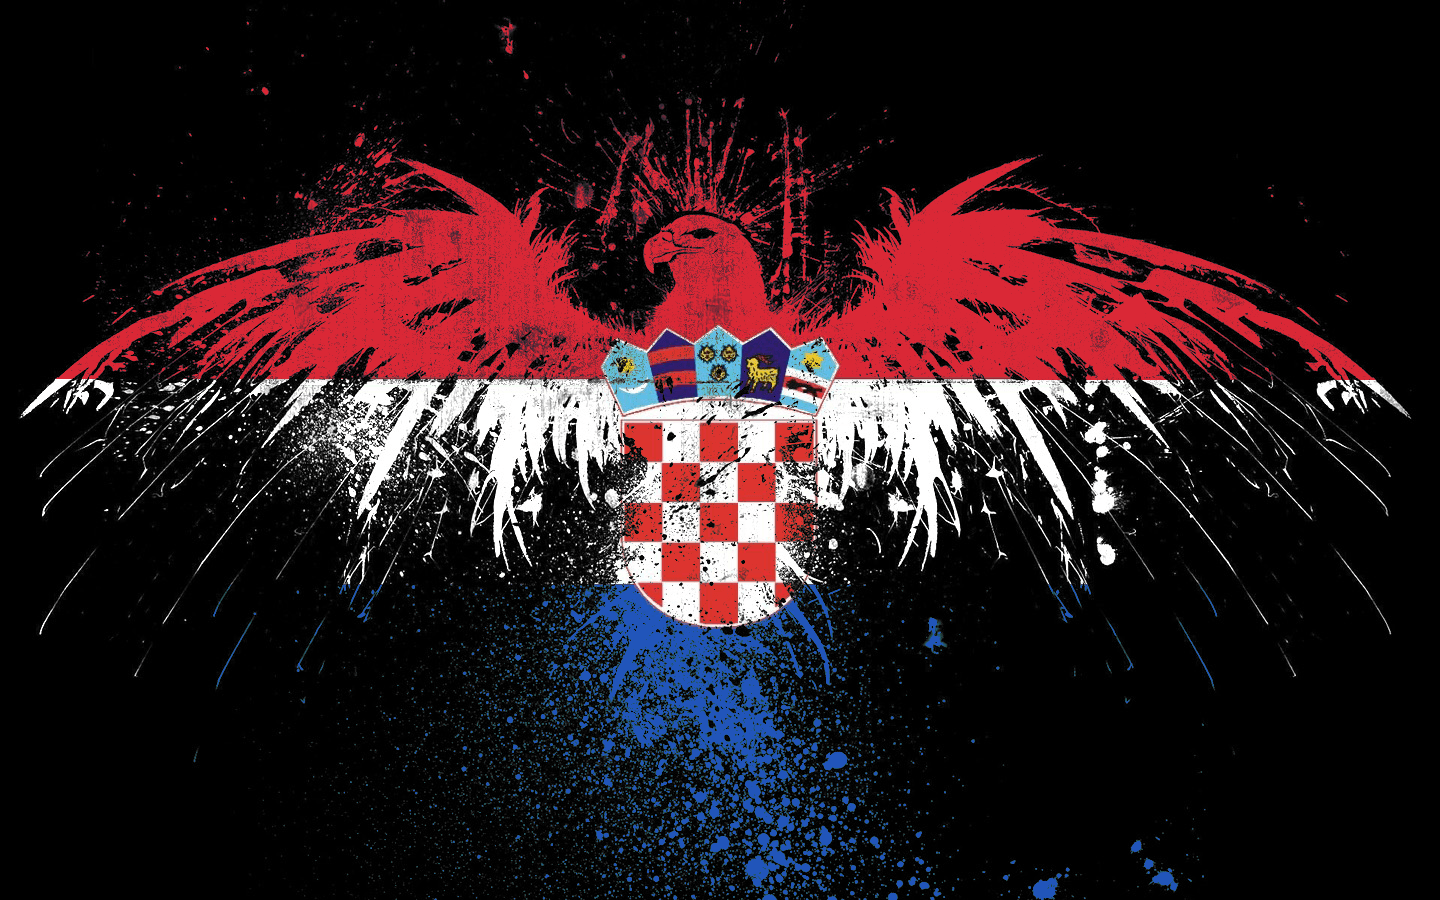 پرچم کرواسی (flag of Croatia)